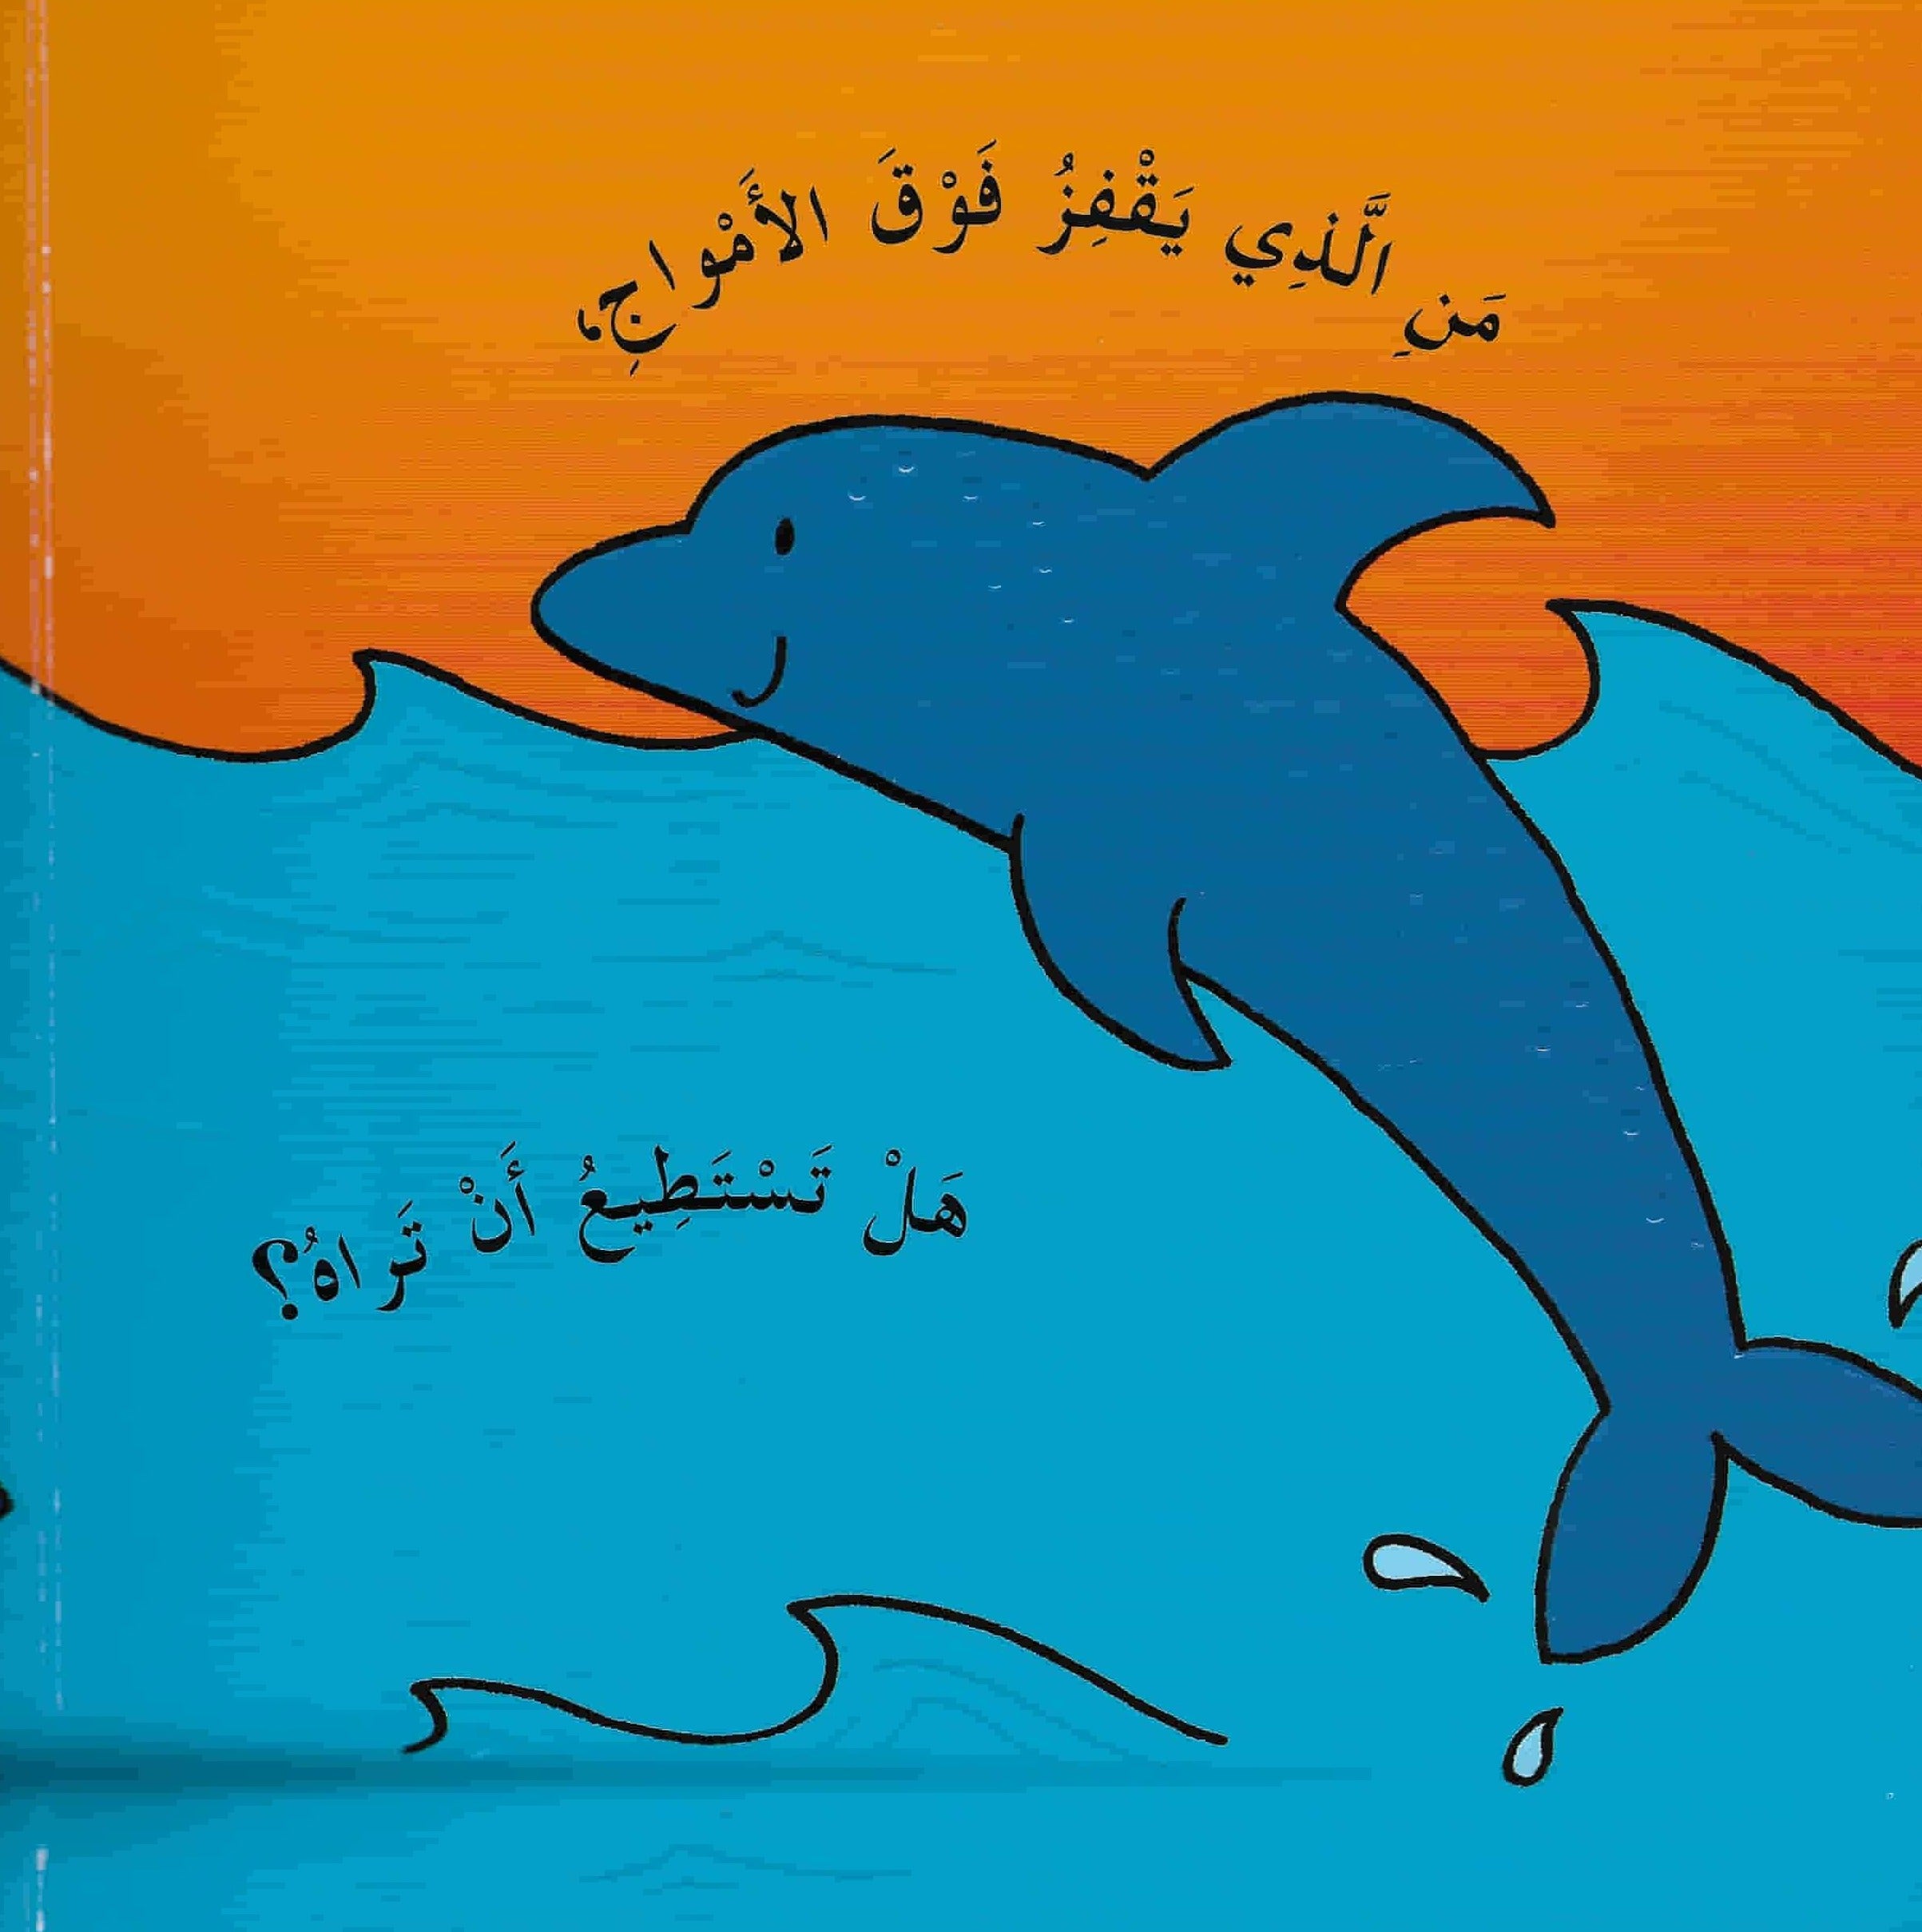 سلسلة الكتب الحيوية كتب أطفال مكتبة لبنان ناشرون